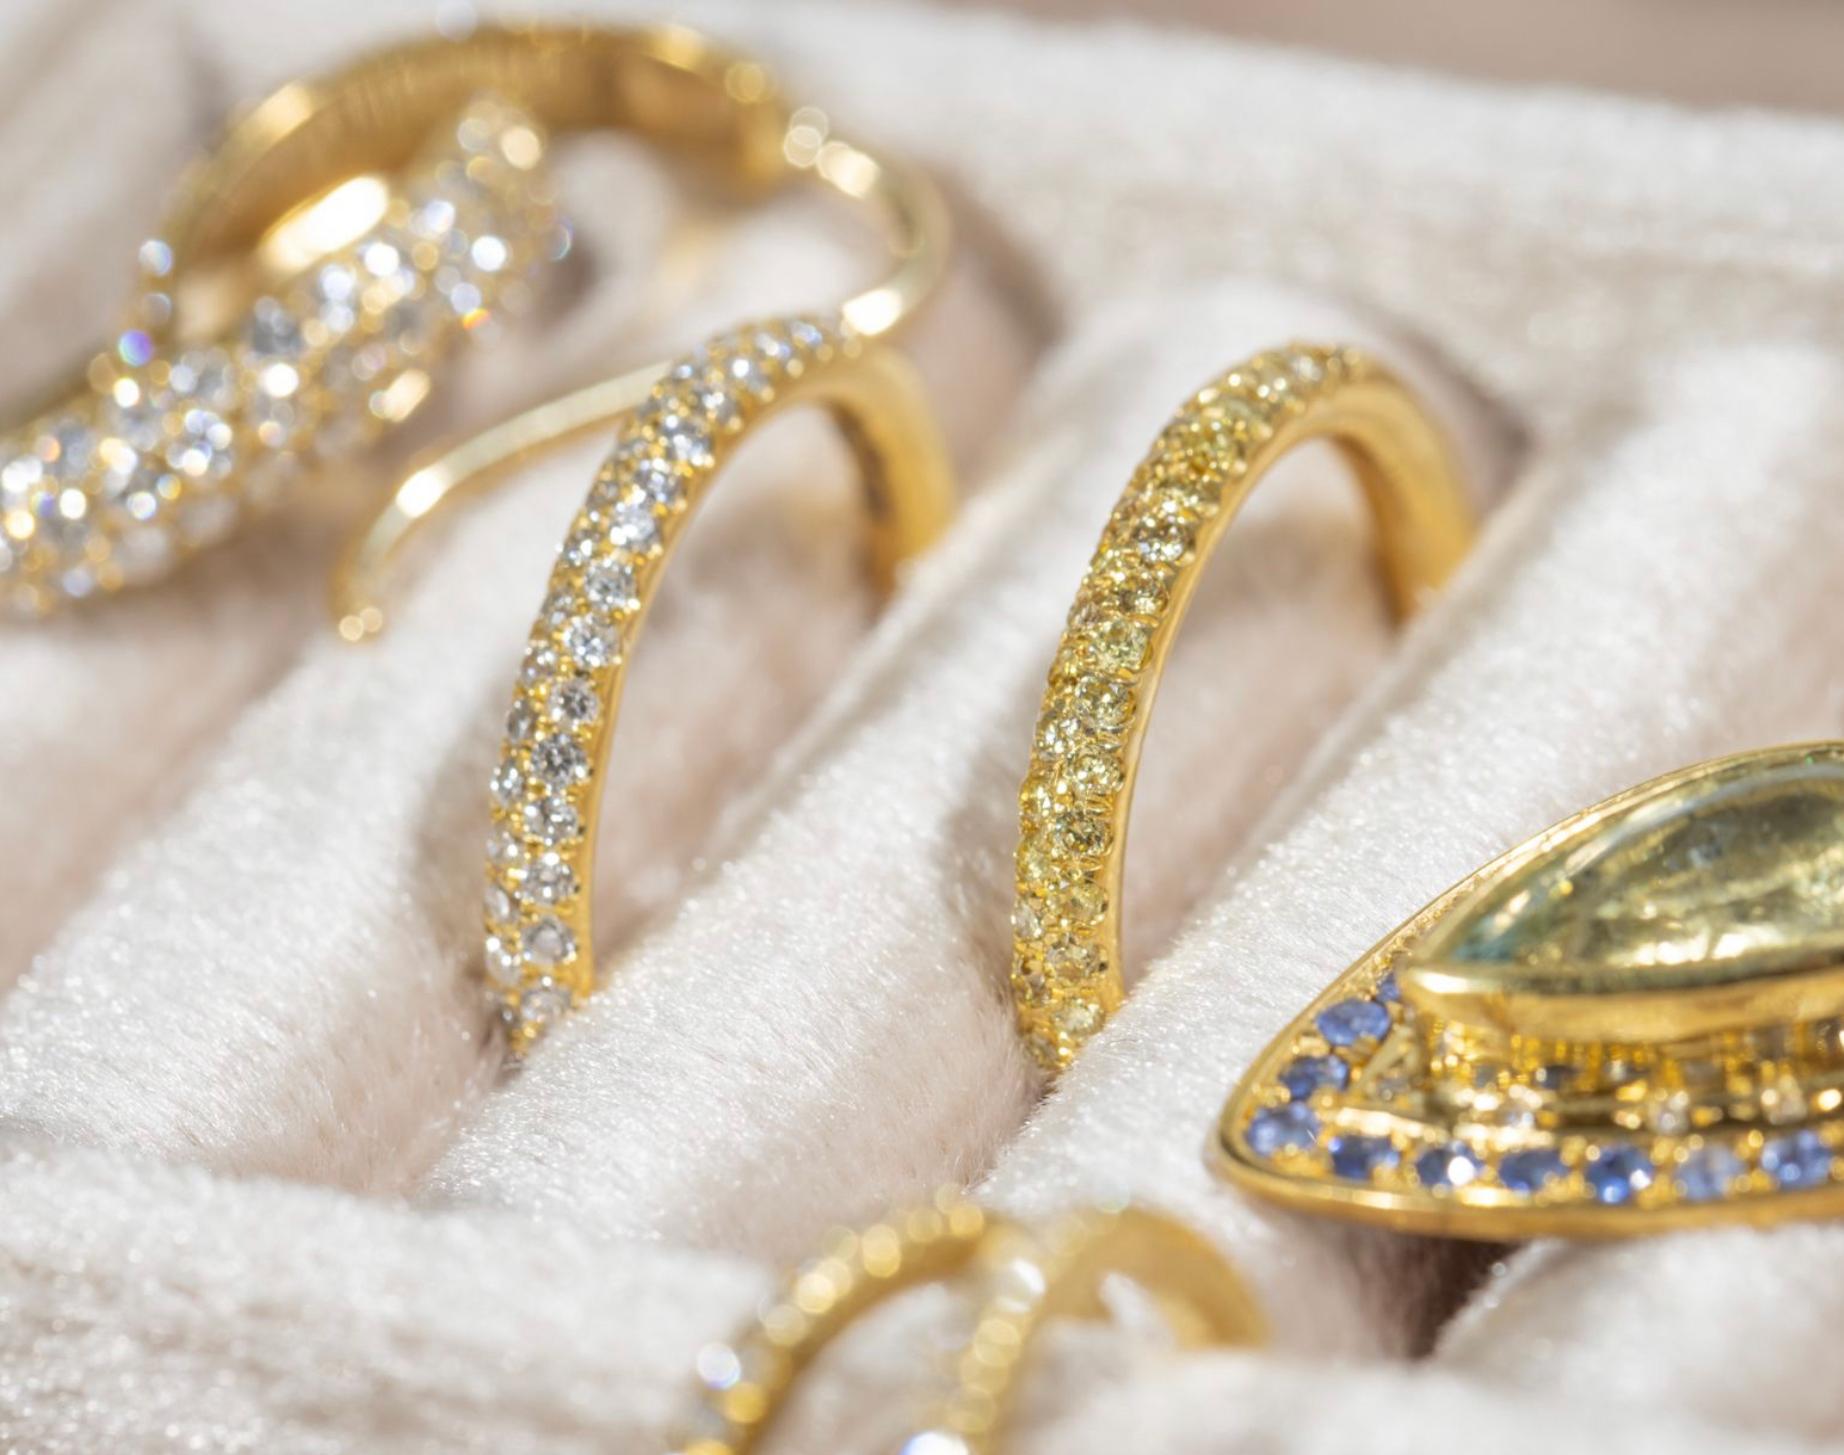 Paris & Lily, einzigartiger, handgefertigter Ring aus 22-karätigem Gold mit gepflasterten gelben Diamanten.  Die gelben Pave-Diamanten umgeben etwas mehr als die Hälfte des Runddrahtrings.  Die gelben Brillanten haben insgesamt 0,50 Karat und sind